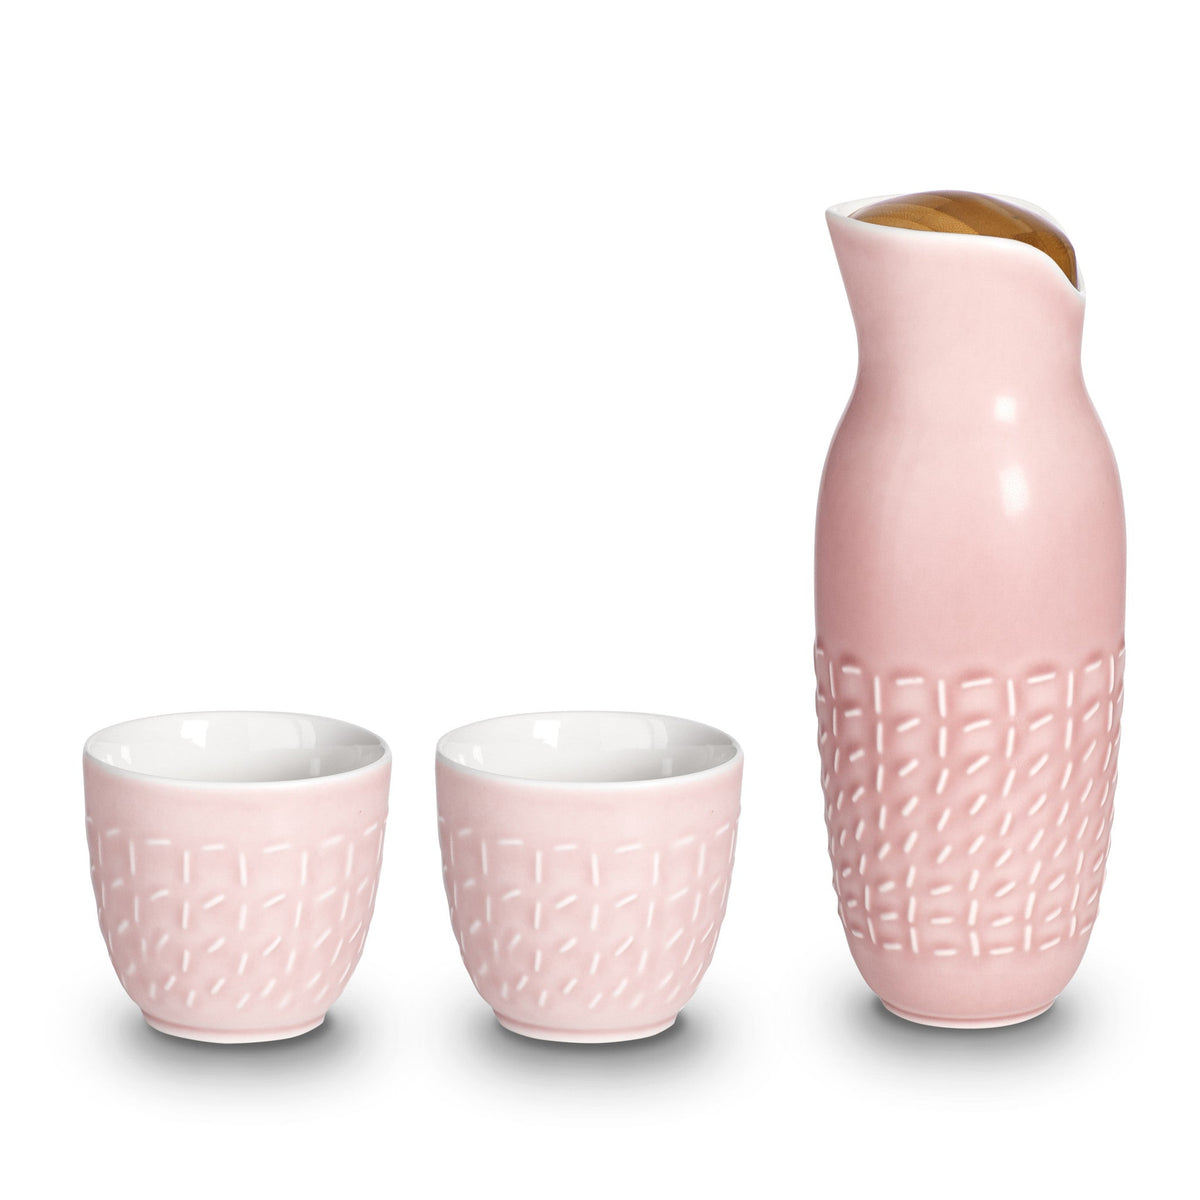 Footprint Carafe Set with Tea Cups (no Handles), Carafe 31oz, Cup 10 oz, Ceramics, Bamboo-1